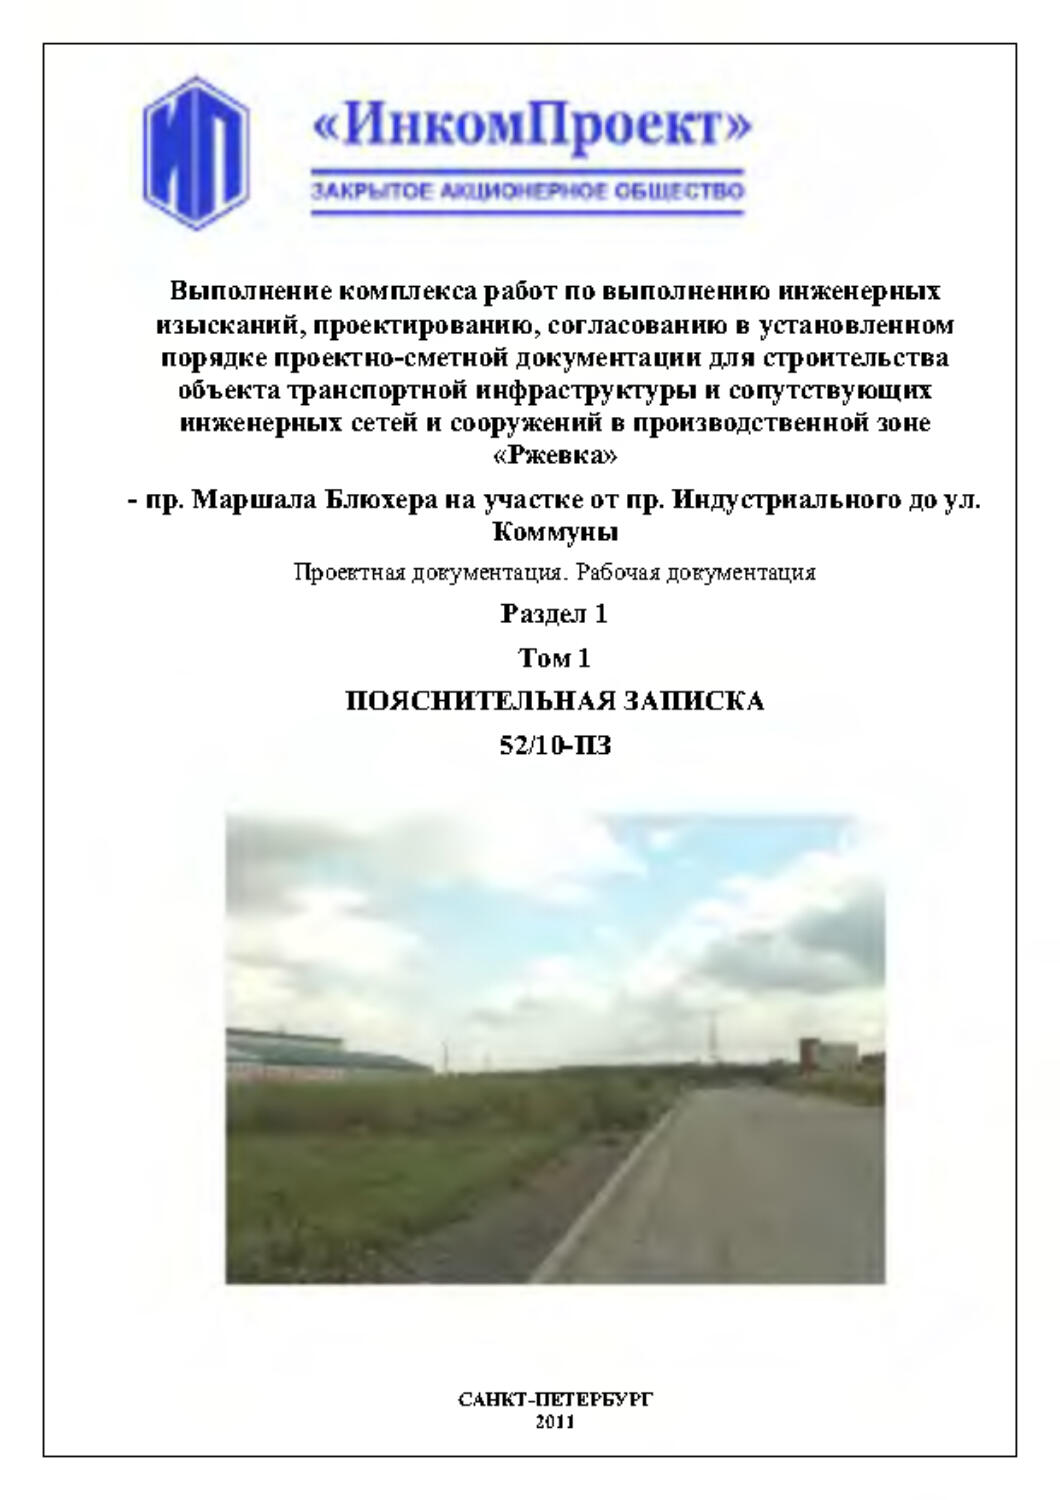 Pages from Титульные листы Блюхера.pdf